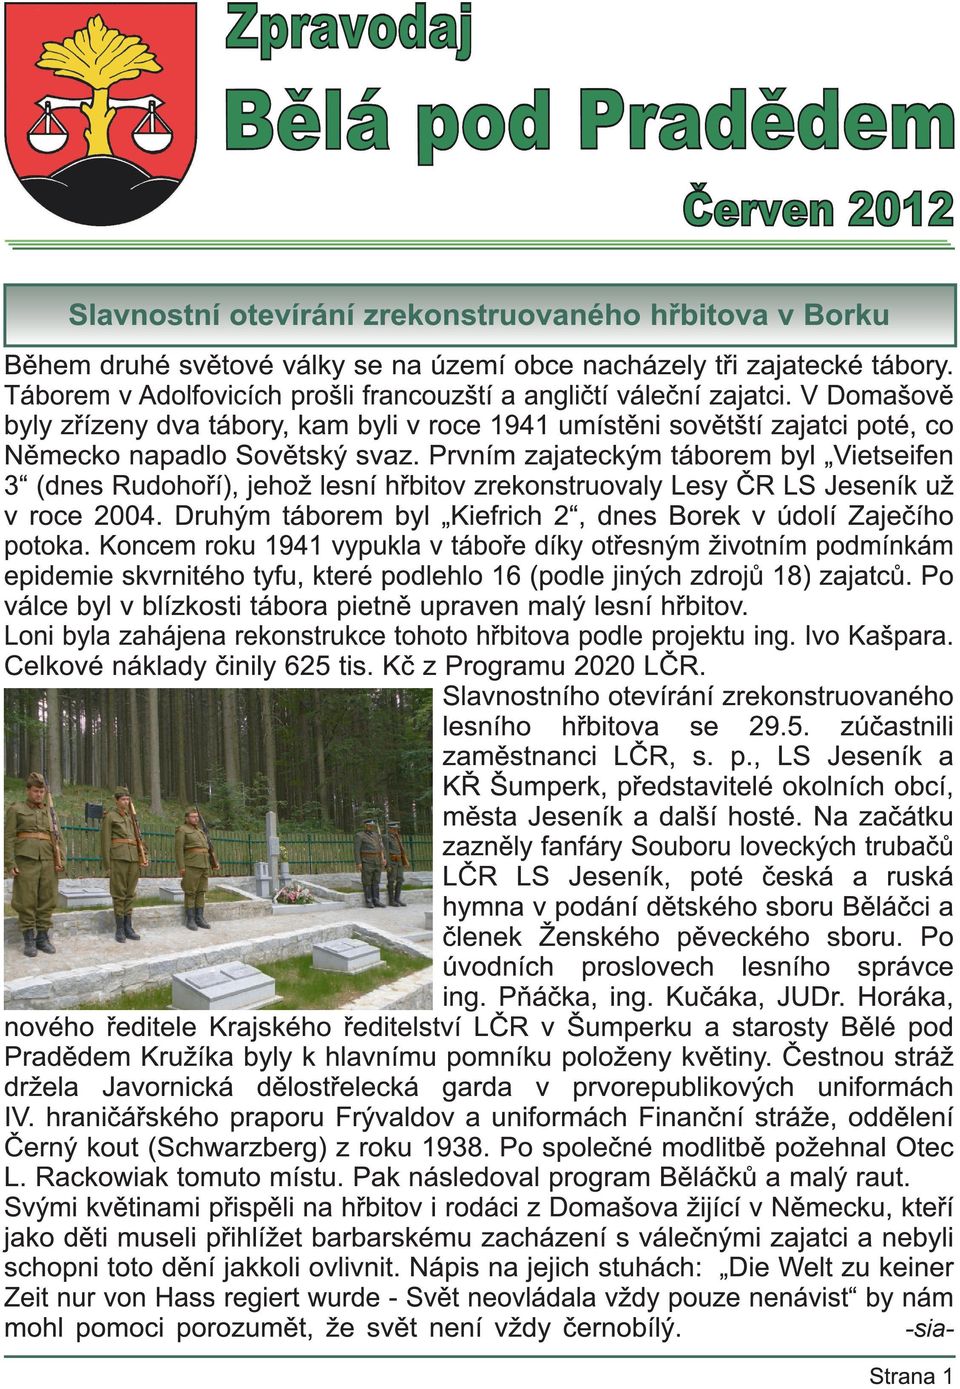 Prvním zajateckým táborem byl Vietseifen 3 (dnes Rudohoří), jehož lesní hřbitov zrekonstruovaly Lesy ČR LS Jeseník už v roce 2004. Druhým táborem byl Kiefrich 2, dnes Borek v údolí Zaječího potoka.